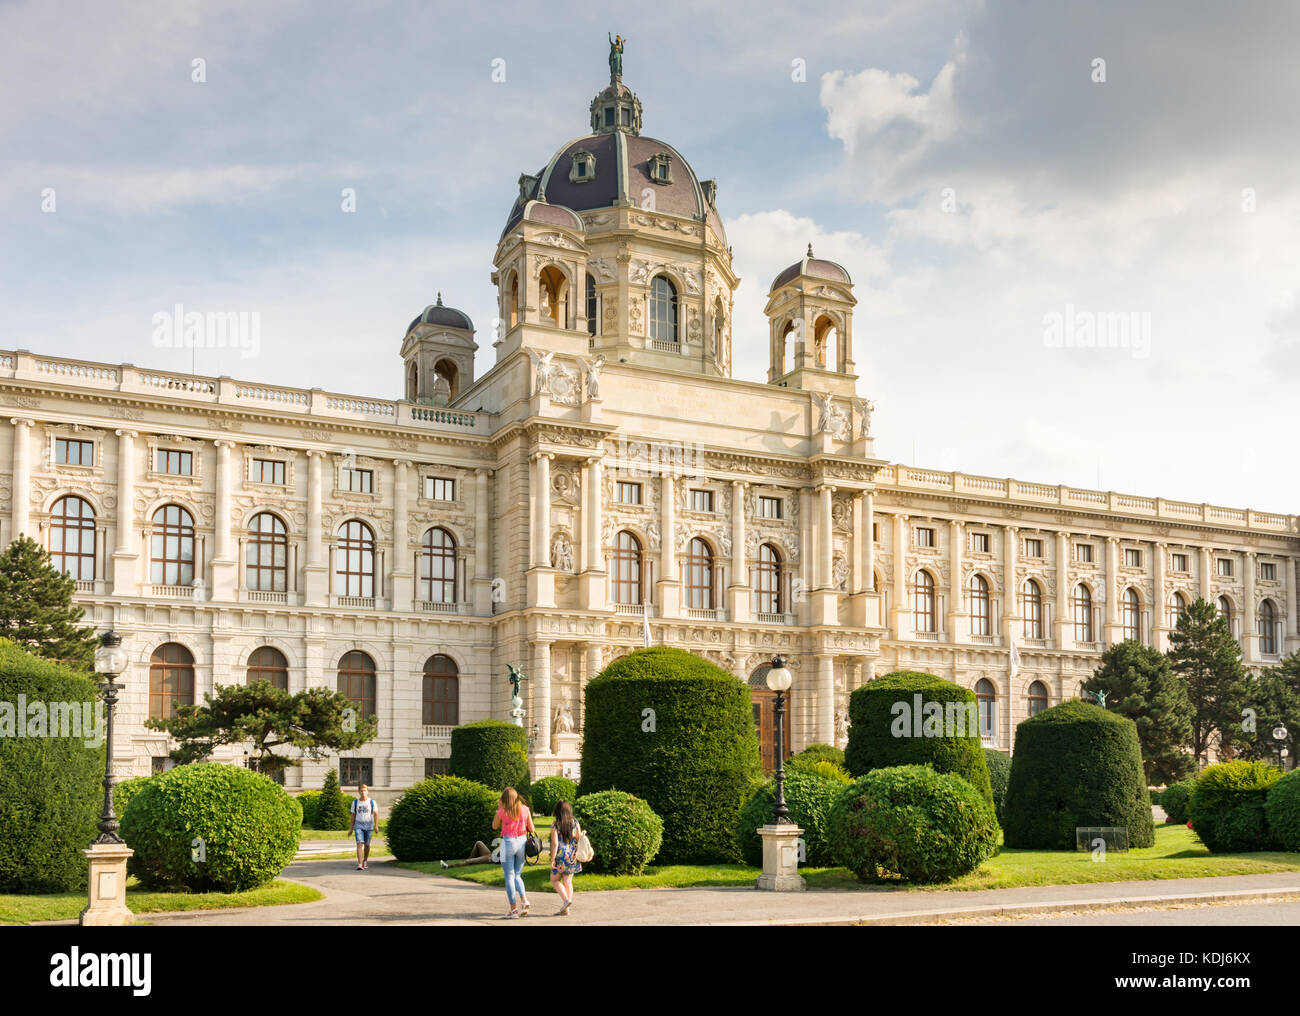 Vienne, Autriche - août 28 : les touristes au musée à l'histoire de l'art de maria theresien-Platz, à Vienne, Autriche Le 28 août 2017. Banque D'Images